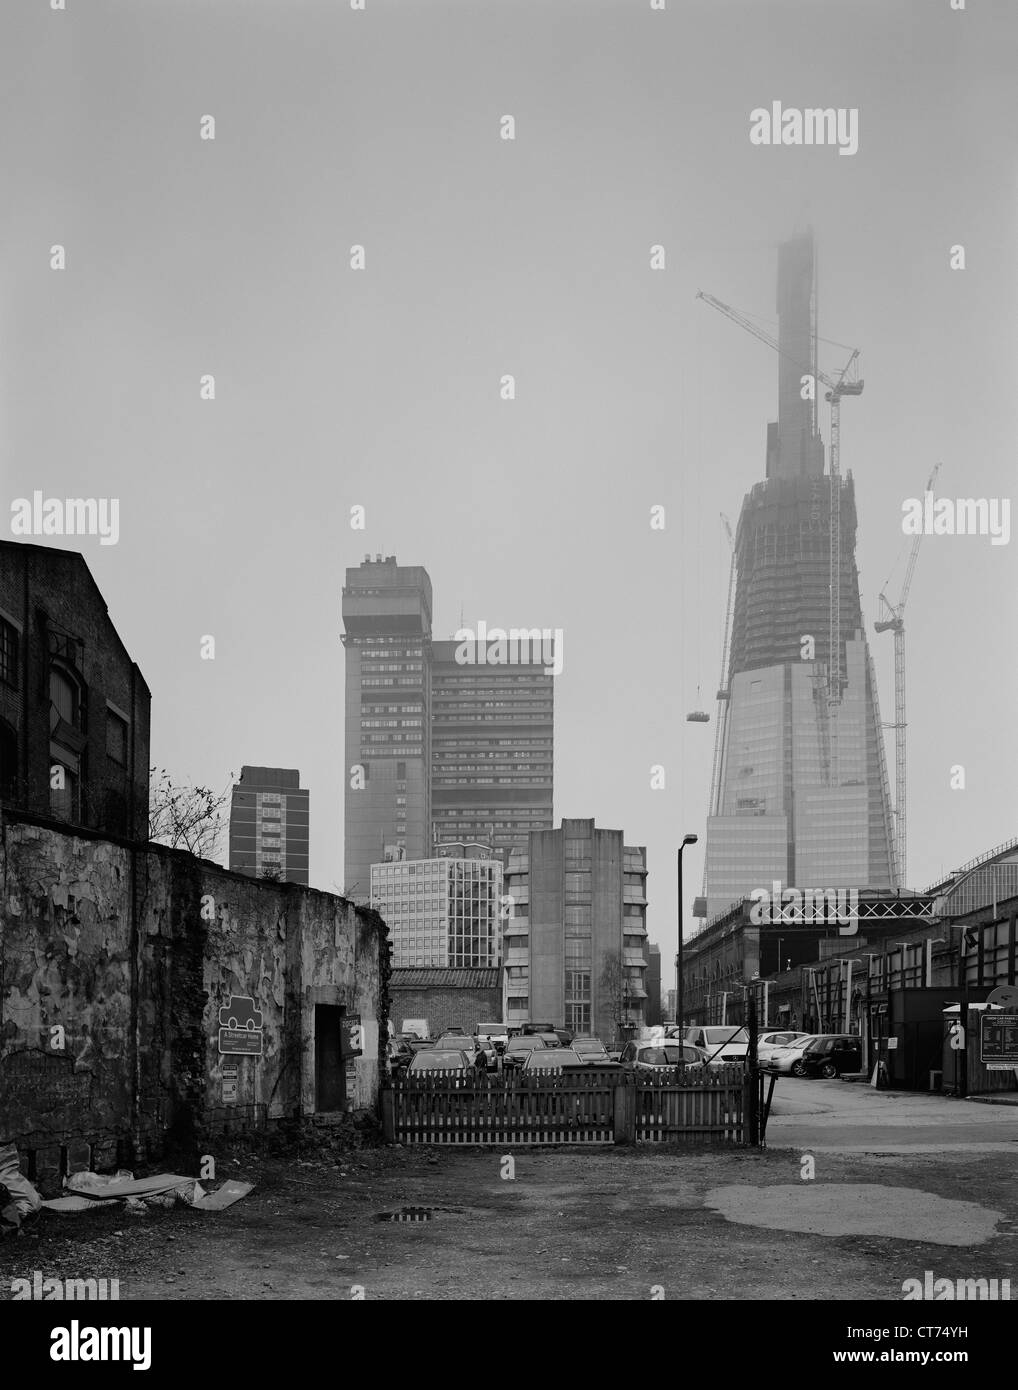 Shard, Londra, Regno Unito. Architetto: Renzo Piano Building Workshop, 2012. Visualizzare durante la nebbia, con i superiori della co Foto Stock